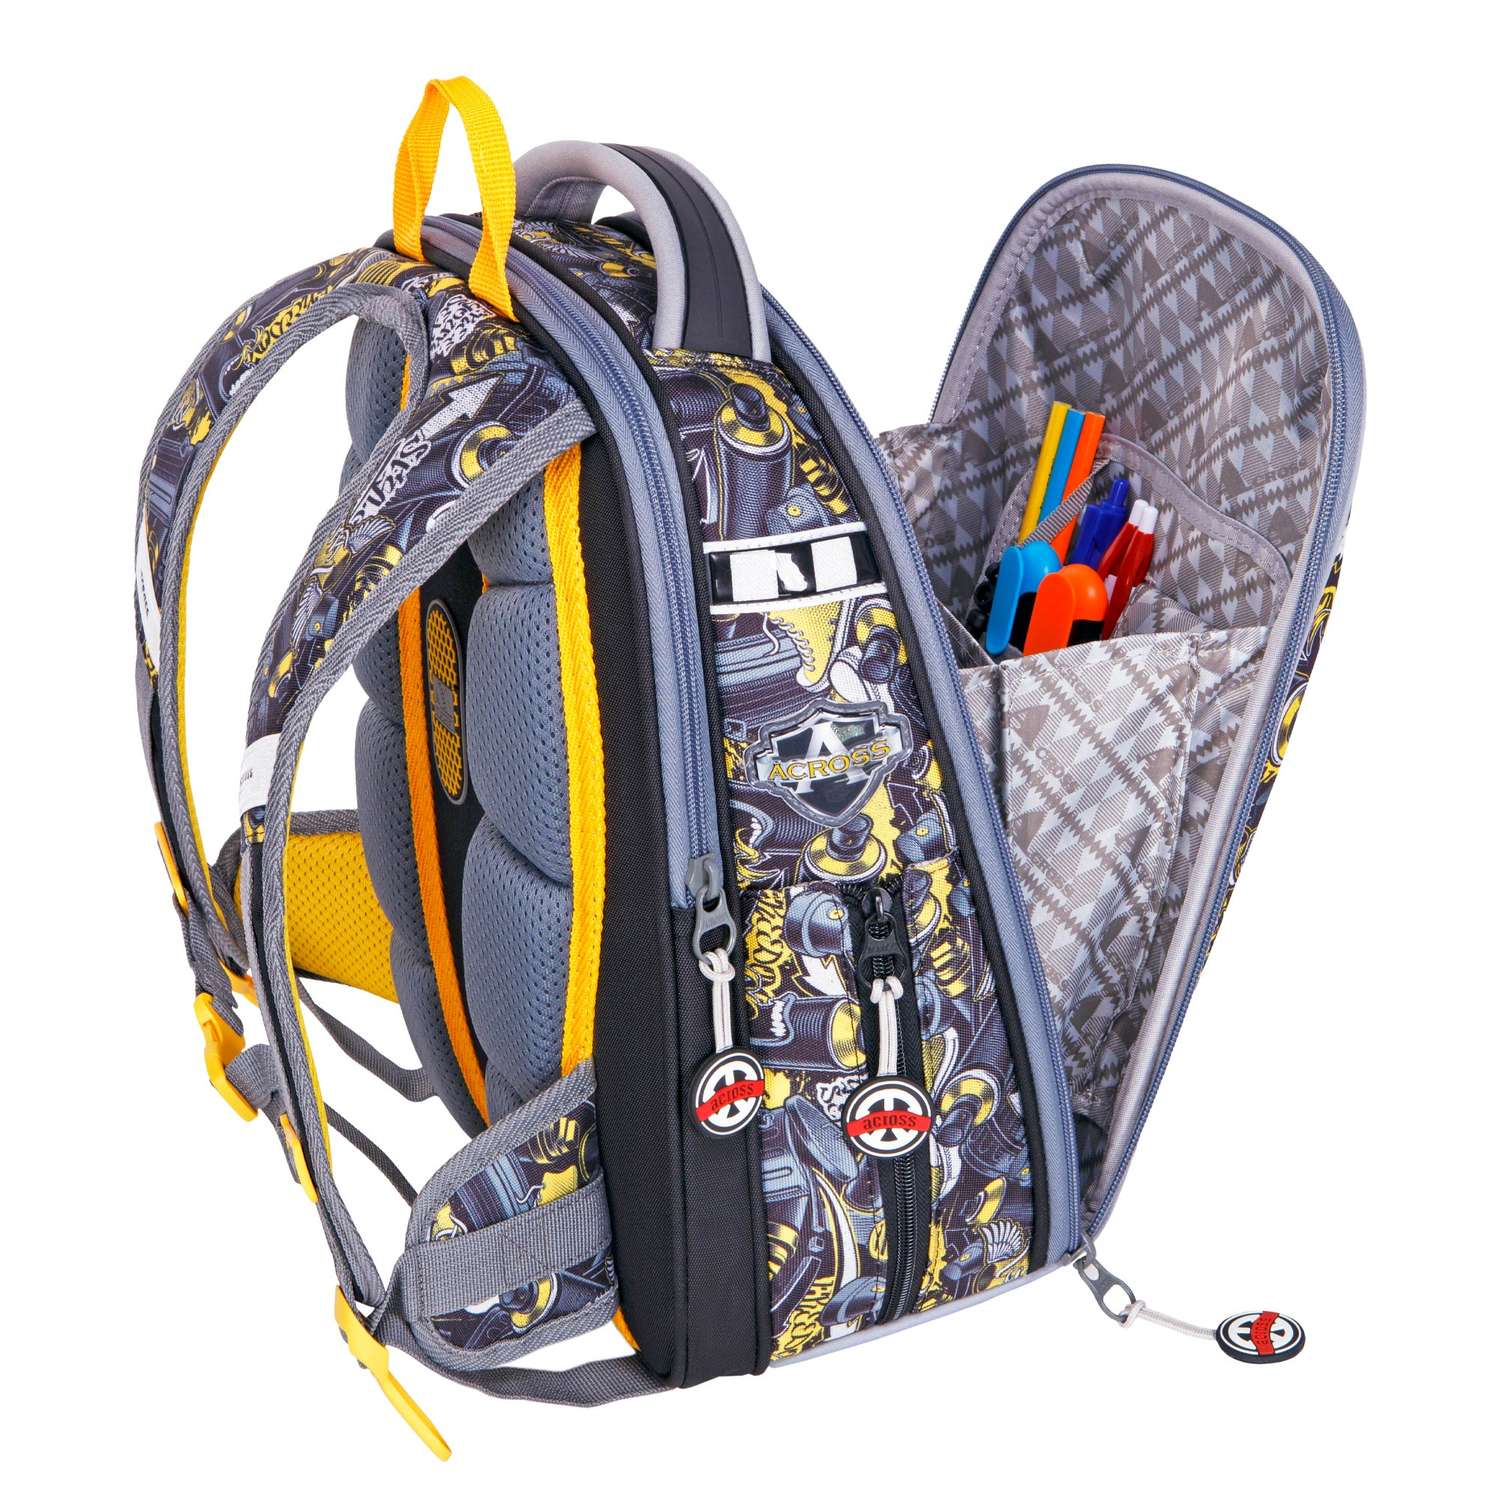 Рюкзак школьный с наполнением ACROSS ACR22-490-1 мешок д/обуви+пенал+ папка+брелок - фото 5